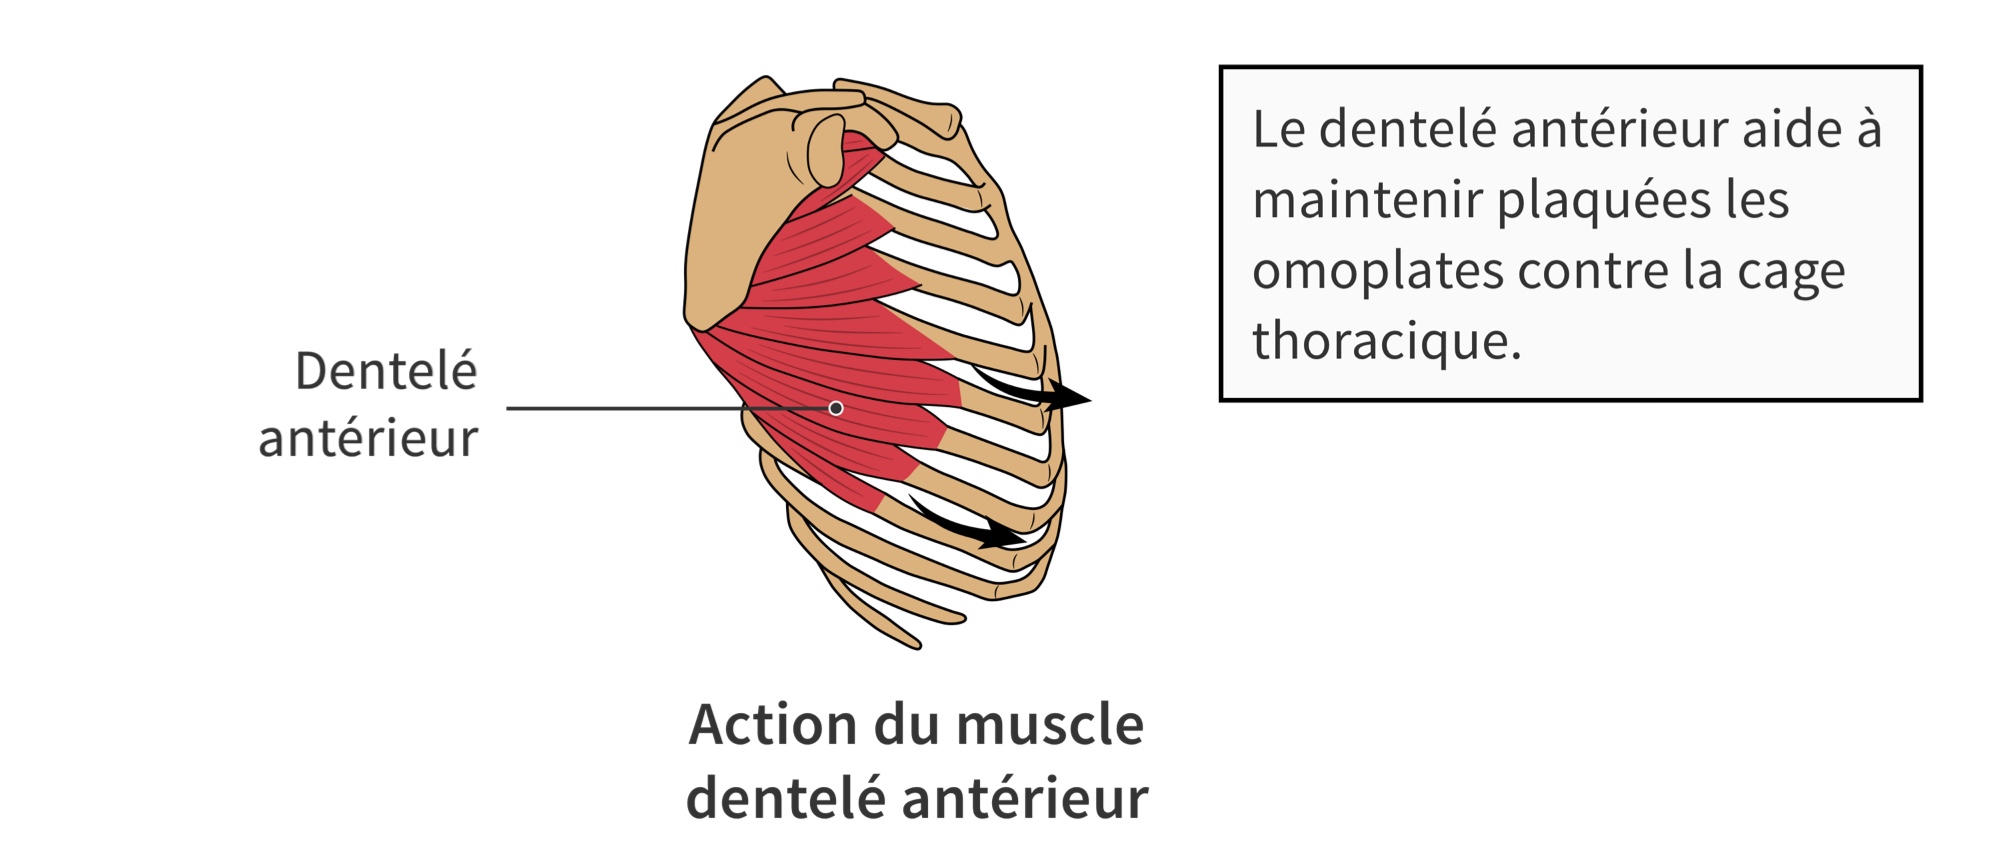 Action du muscle dentelé antérieur